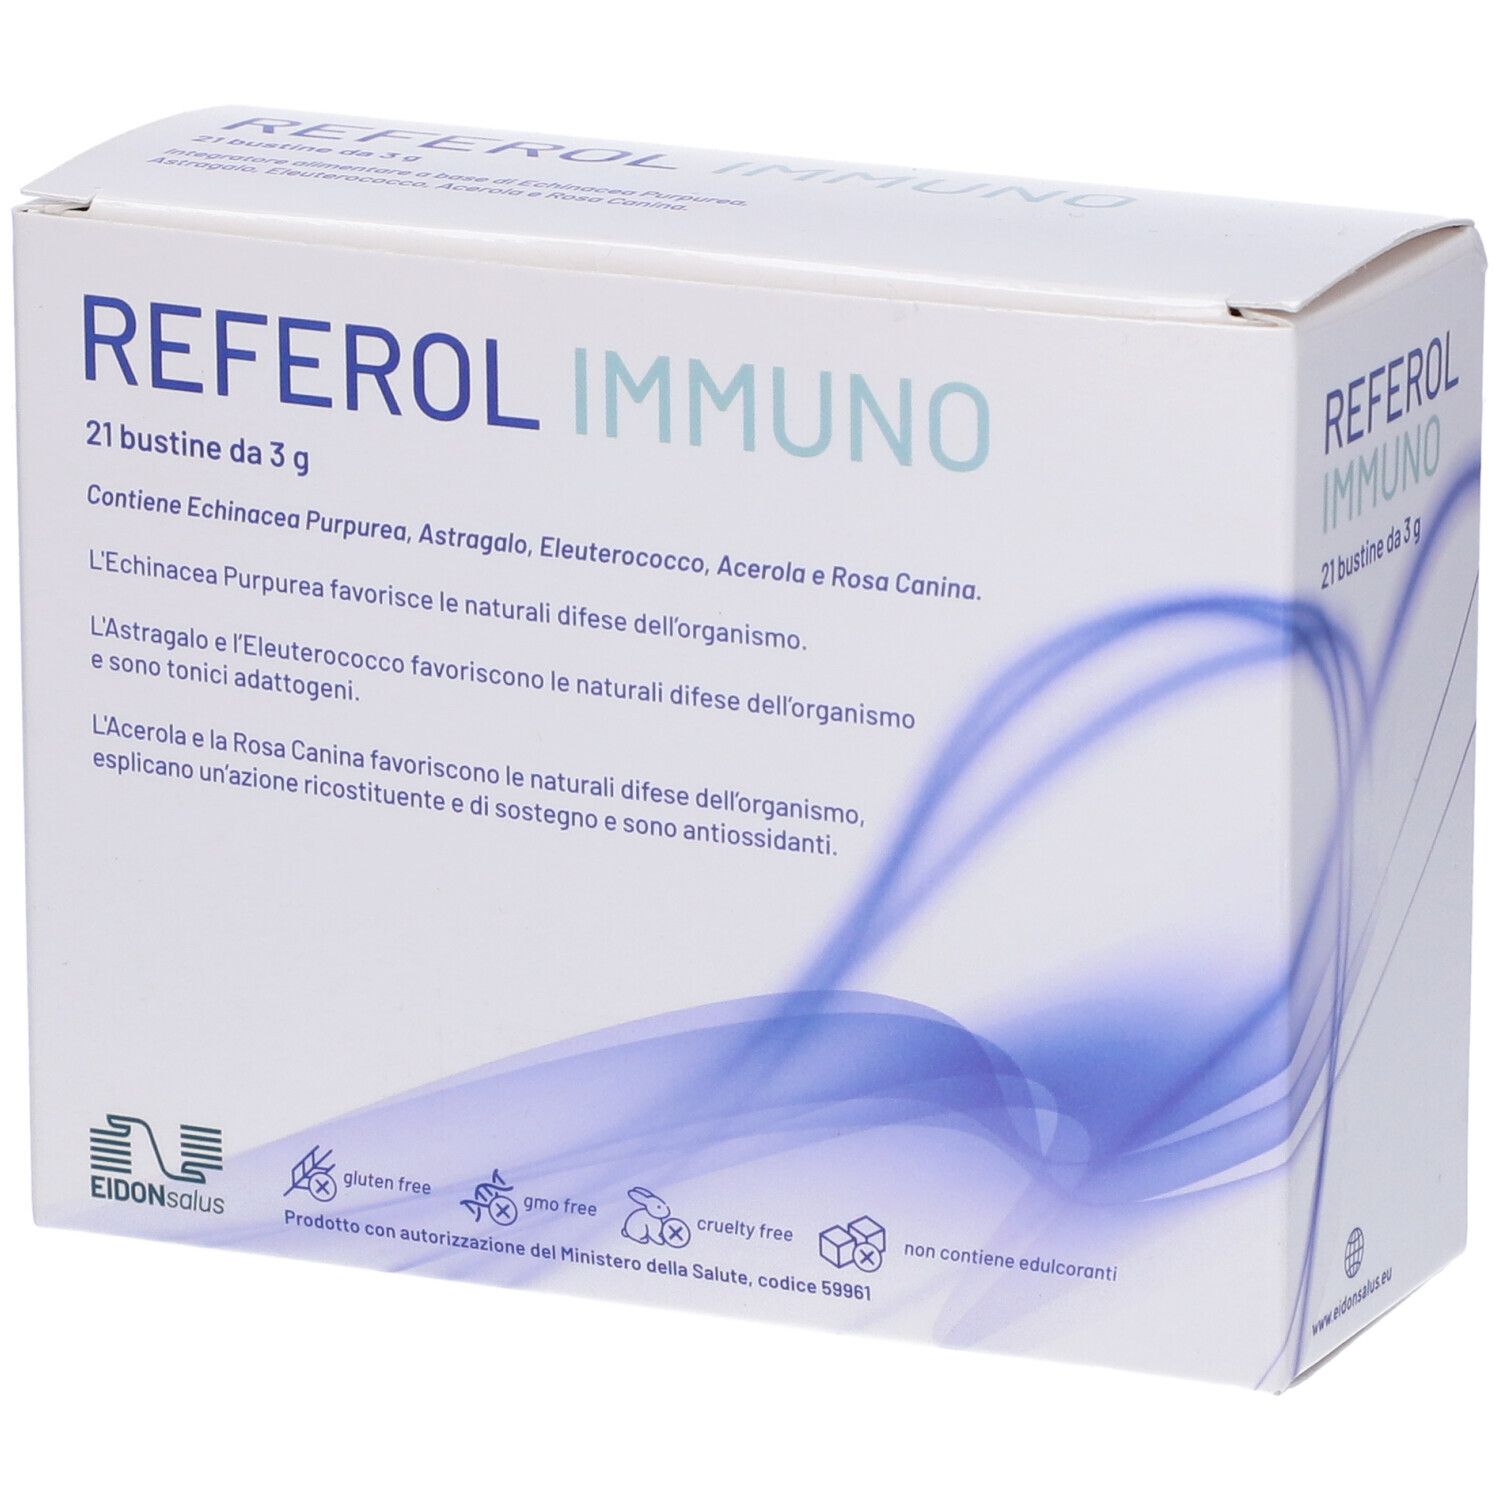 Referol Immuno 21Bust